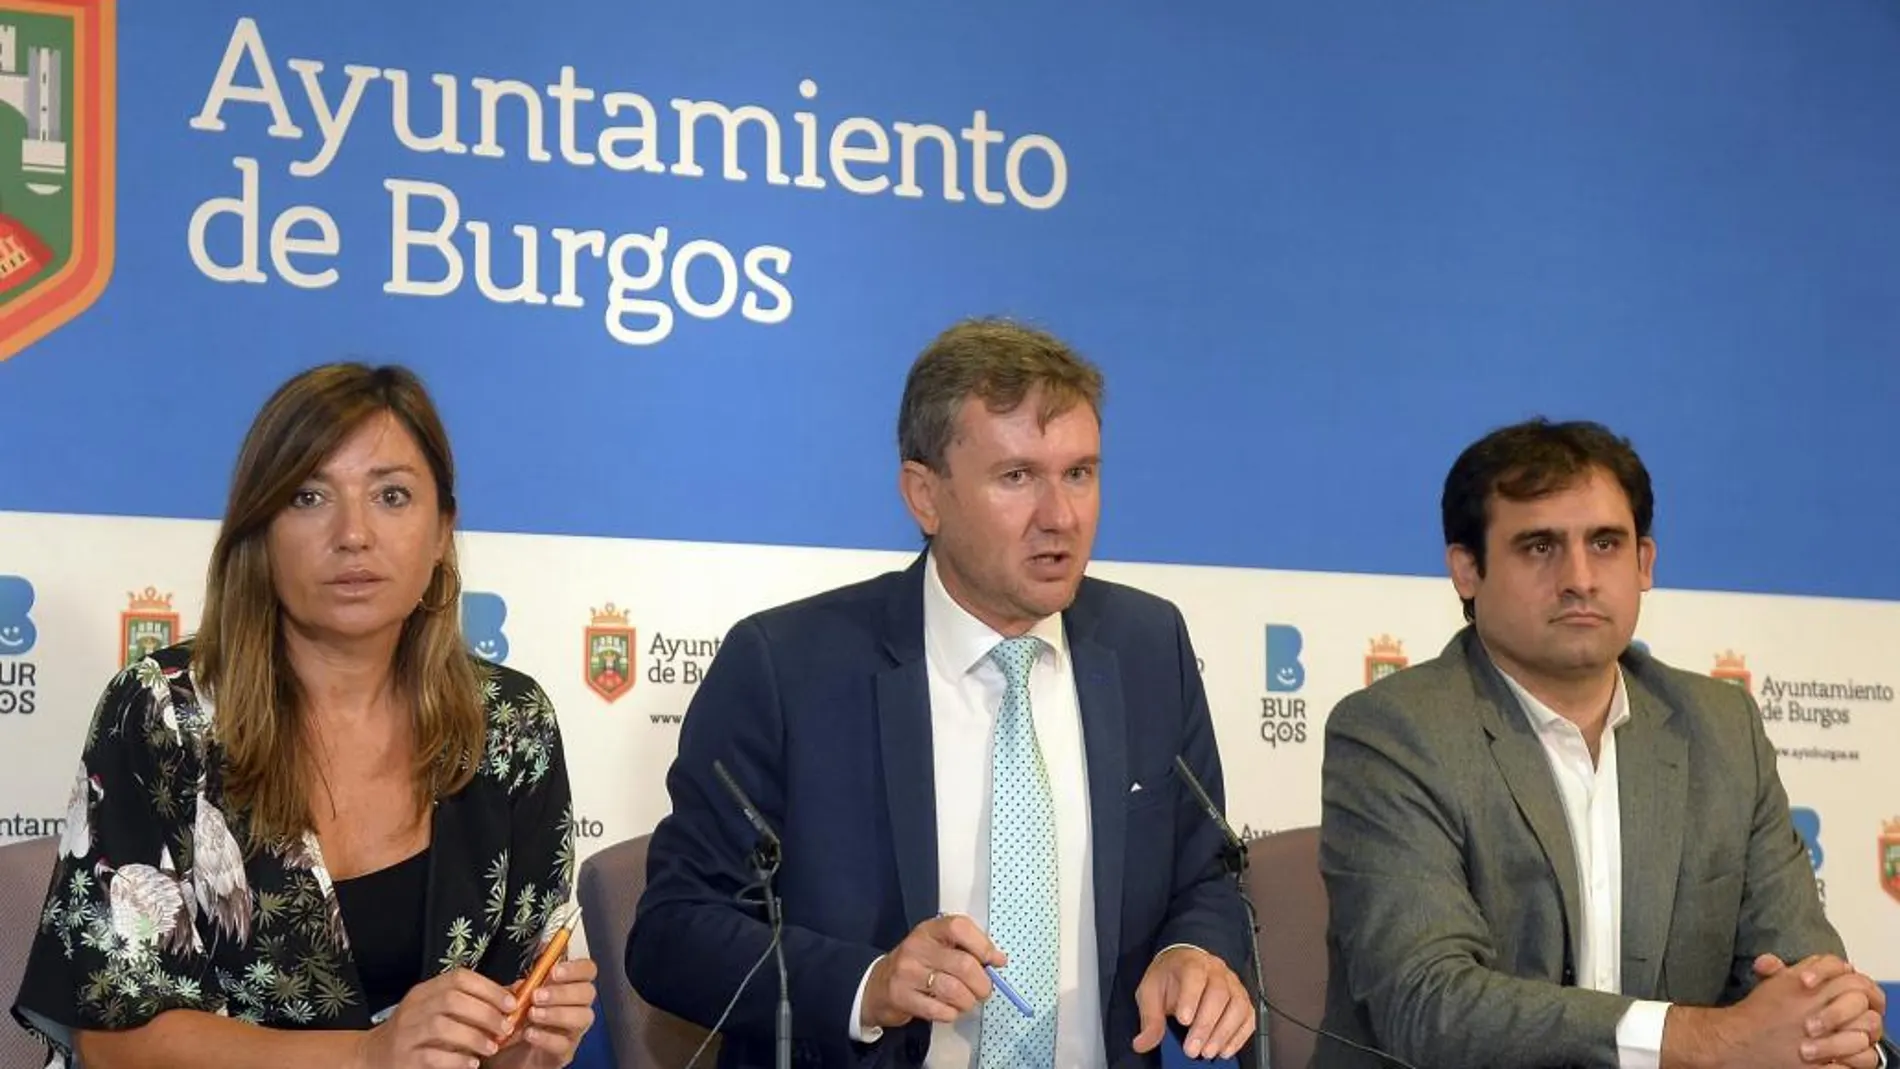 El alcalde de Burgos, Javier Lacalle, acompañado por Carolina Blasco y Jorge Berzosa Alonso, ofrece una rueda de prensa para informar sobre los proyectos y objetivos para el nuevo curso político